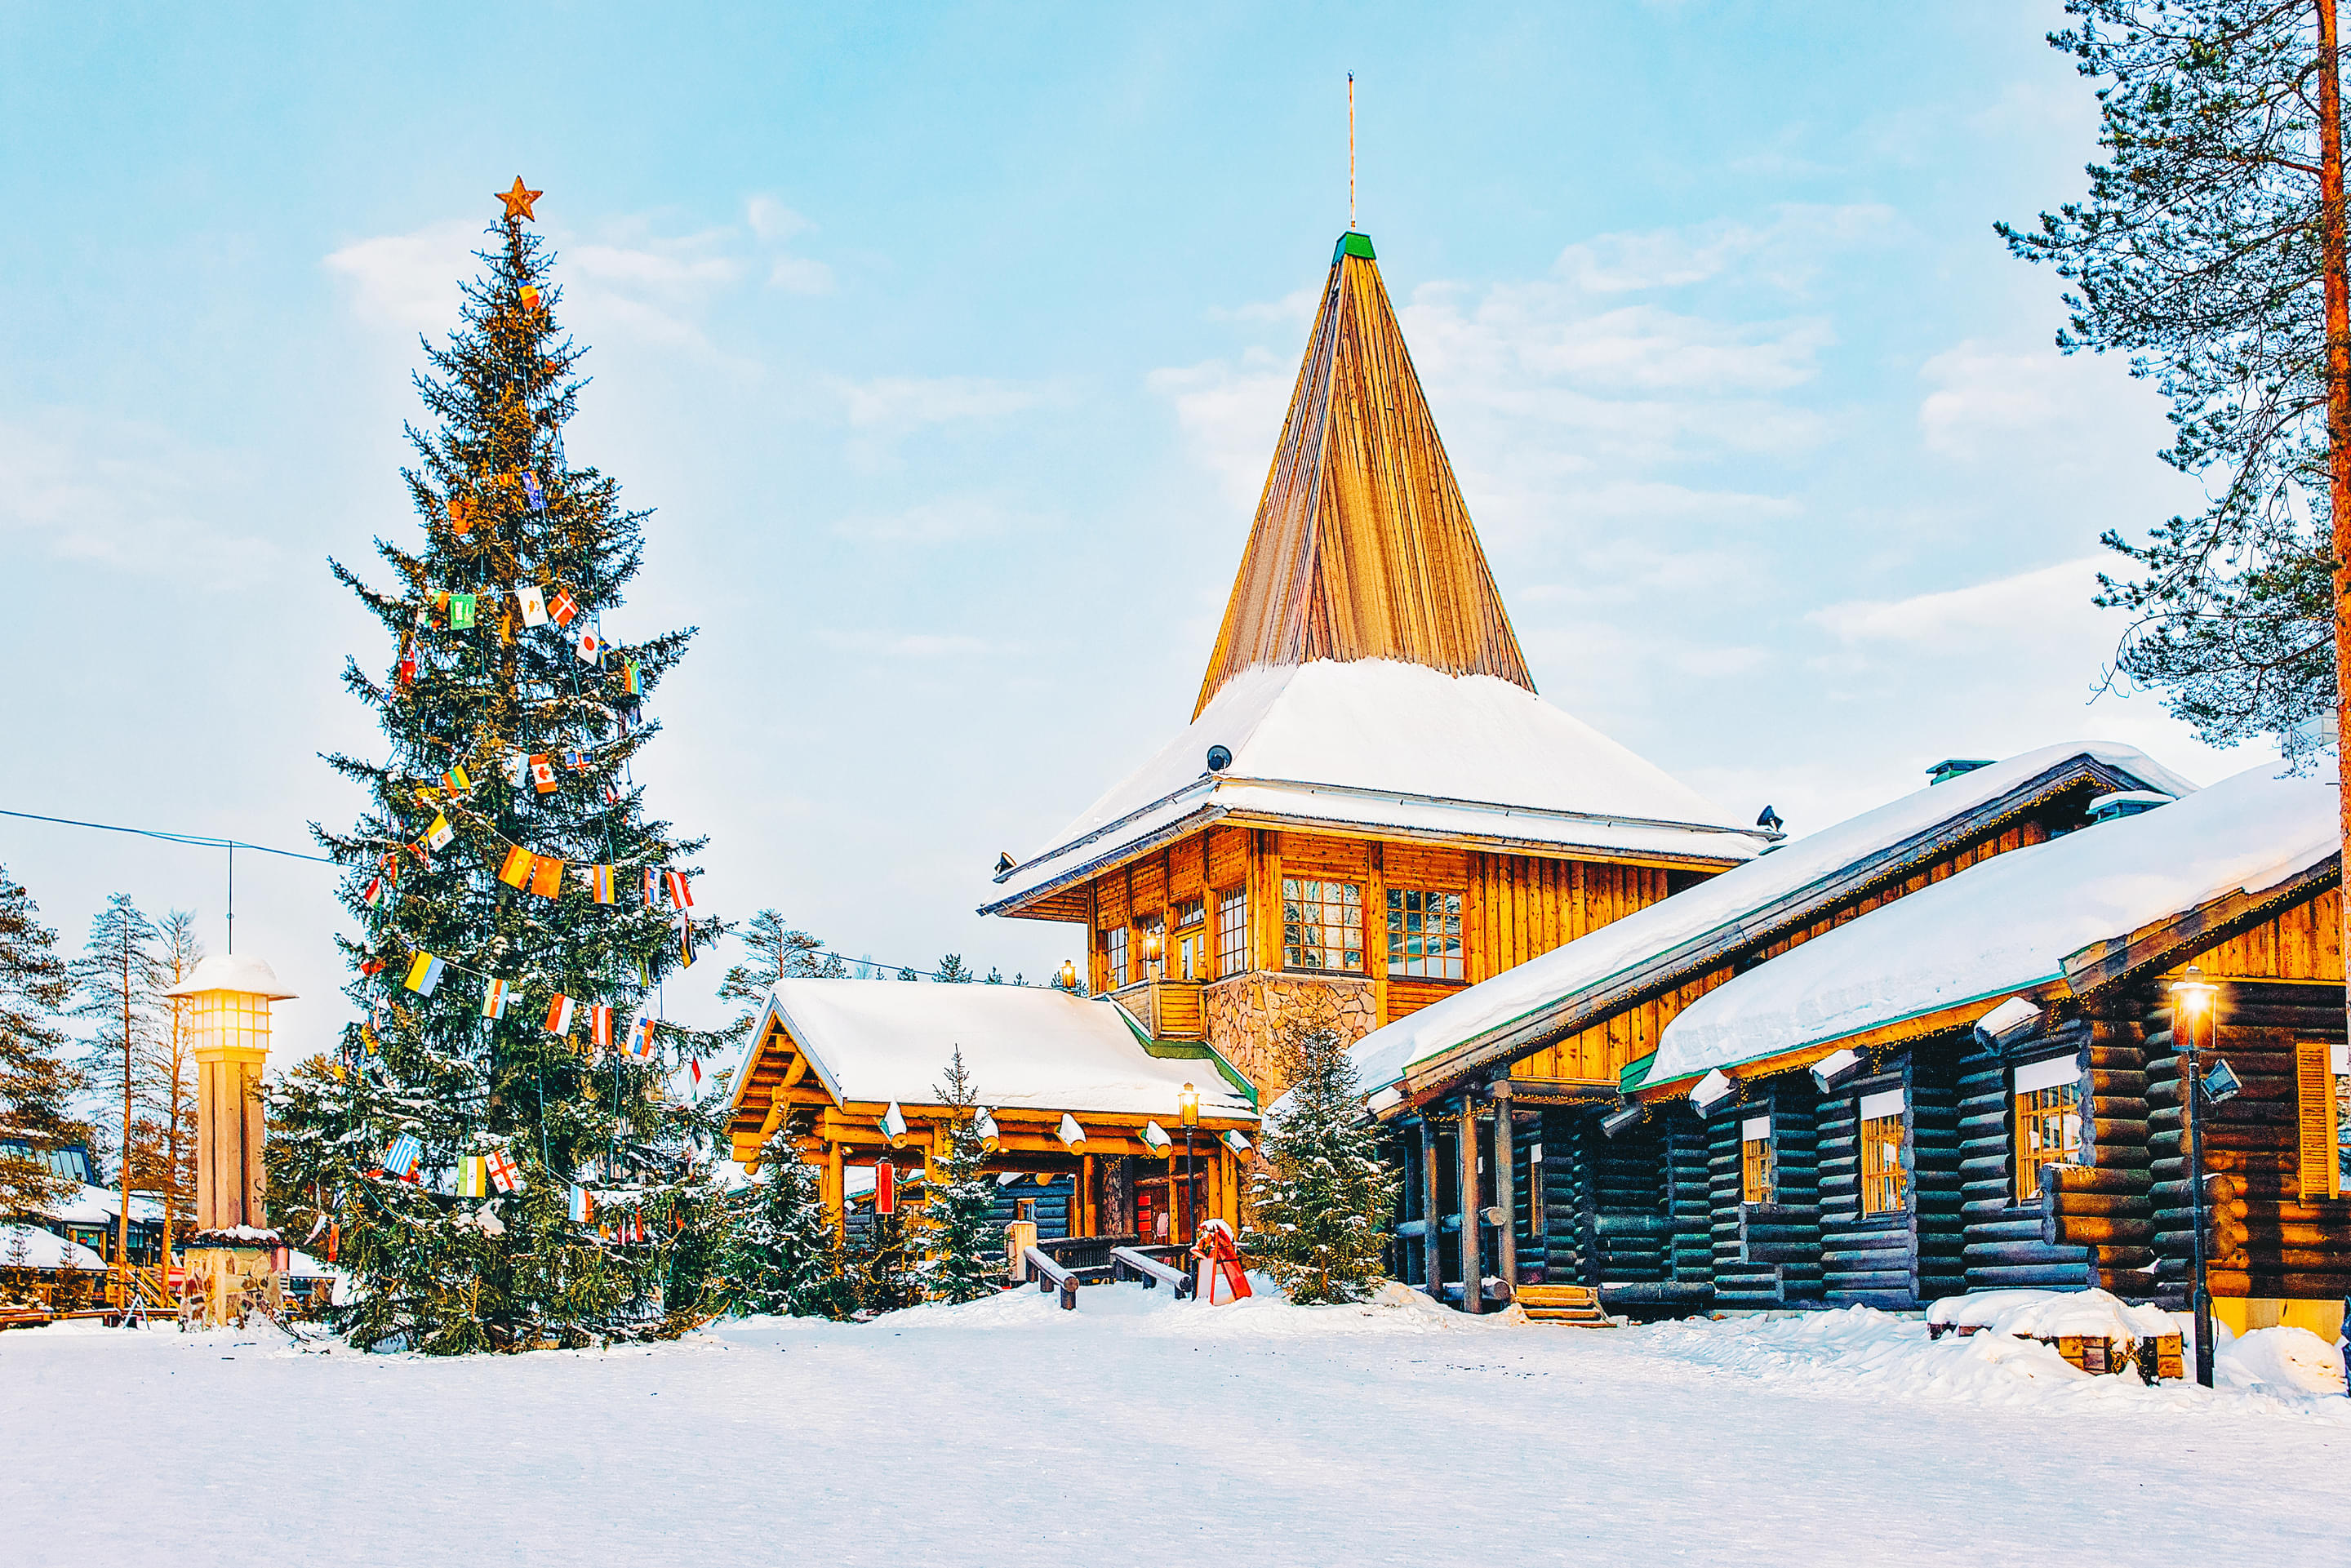 Santa Claus Village Overview